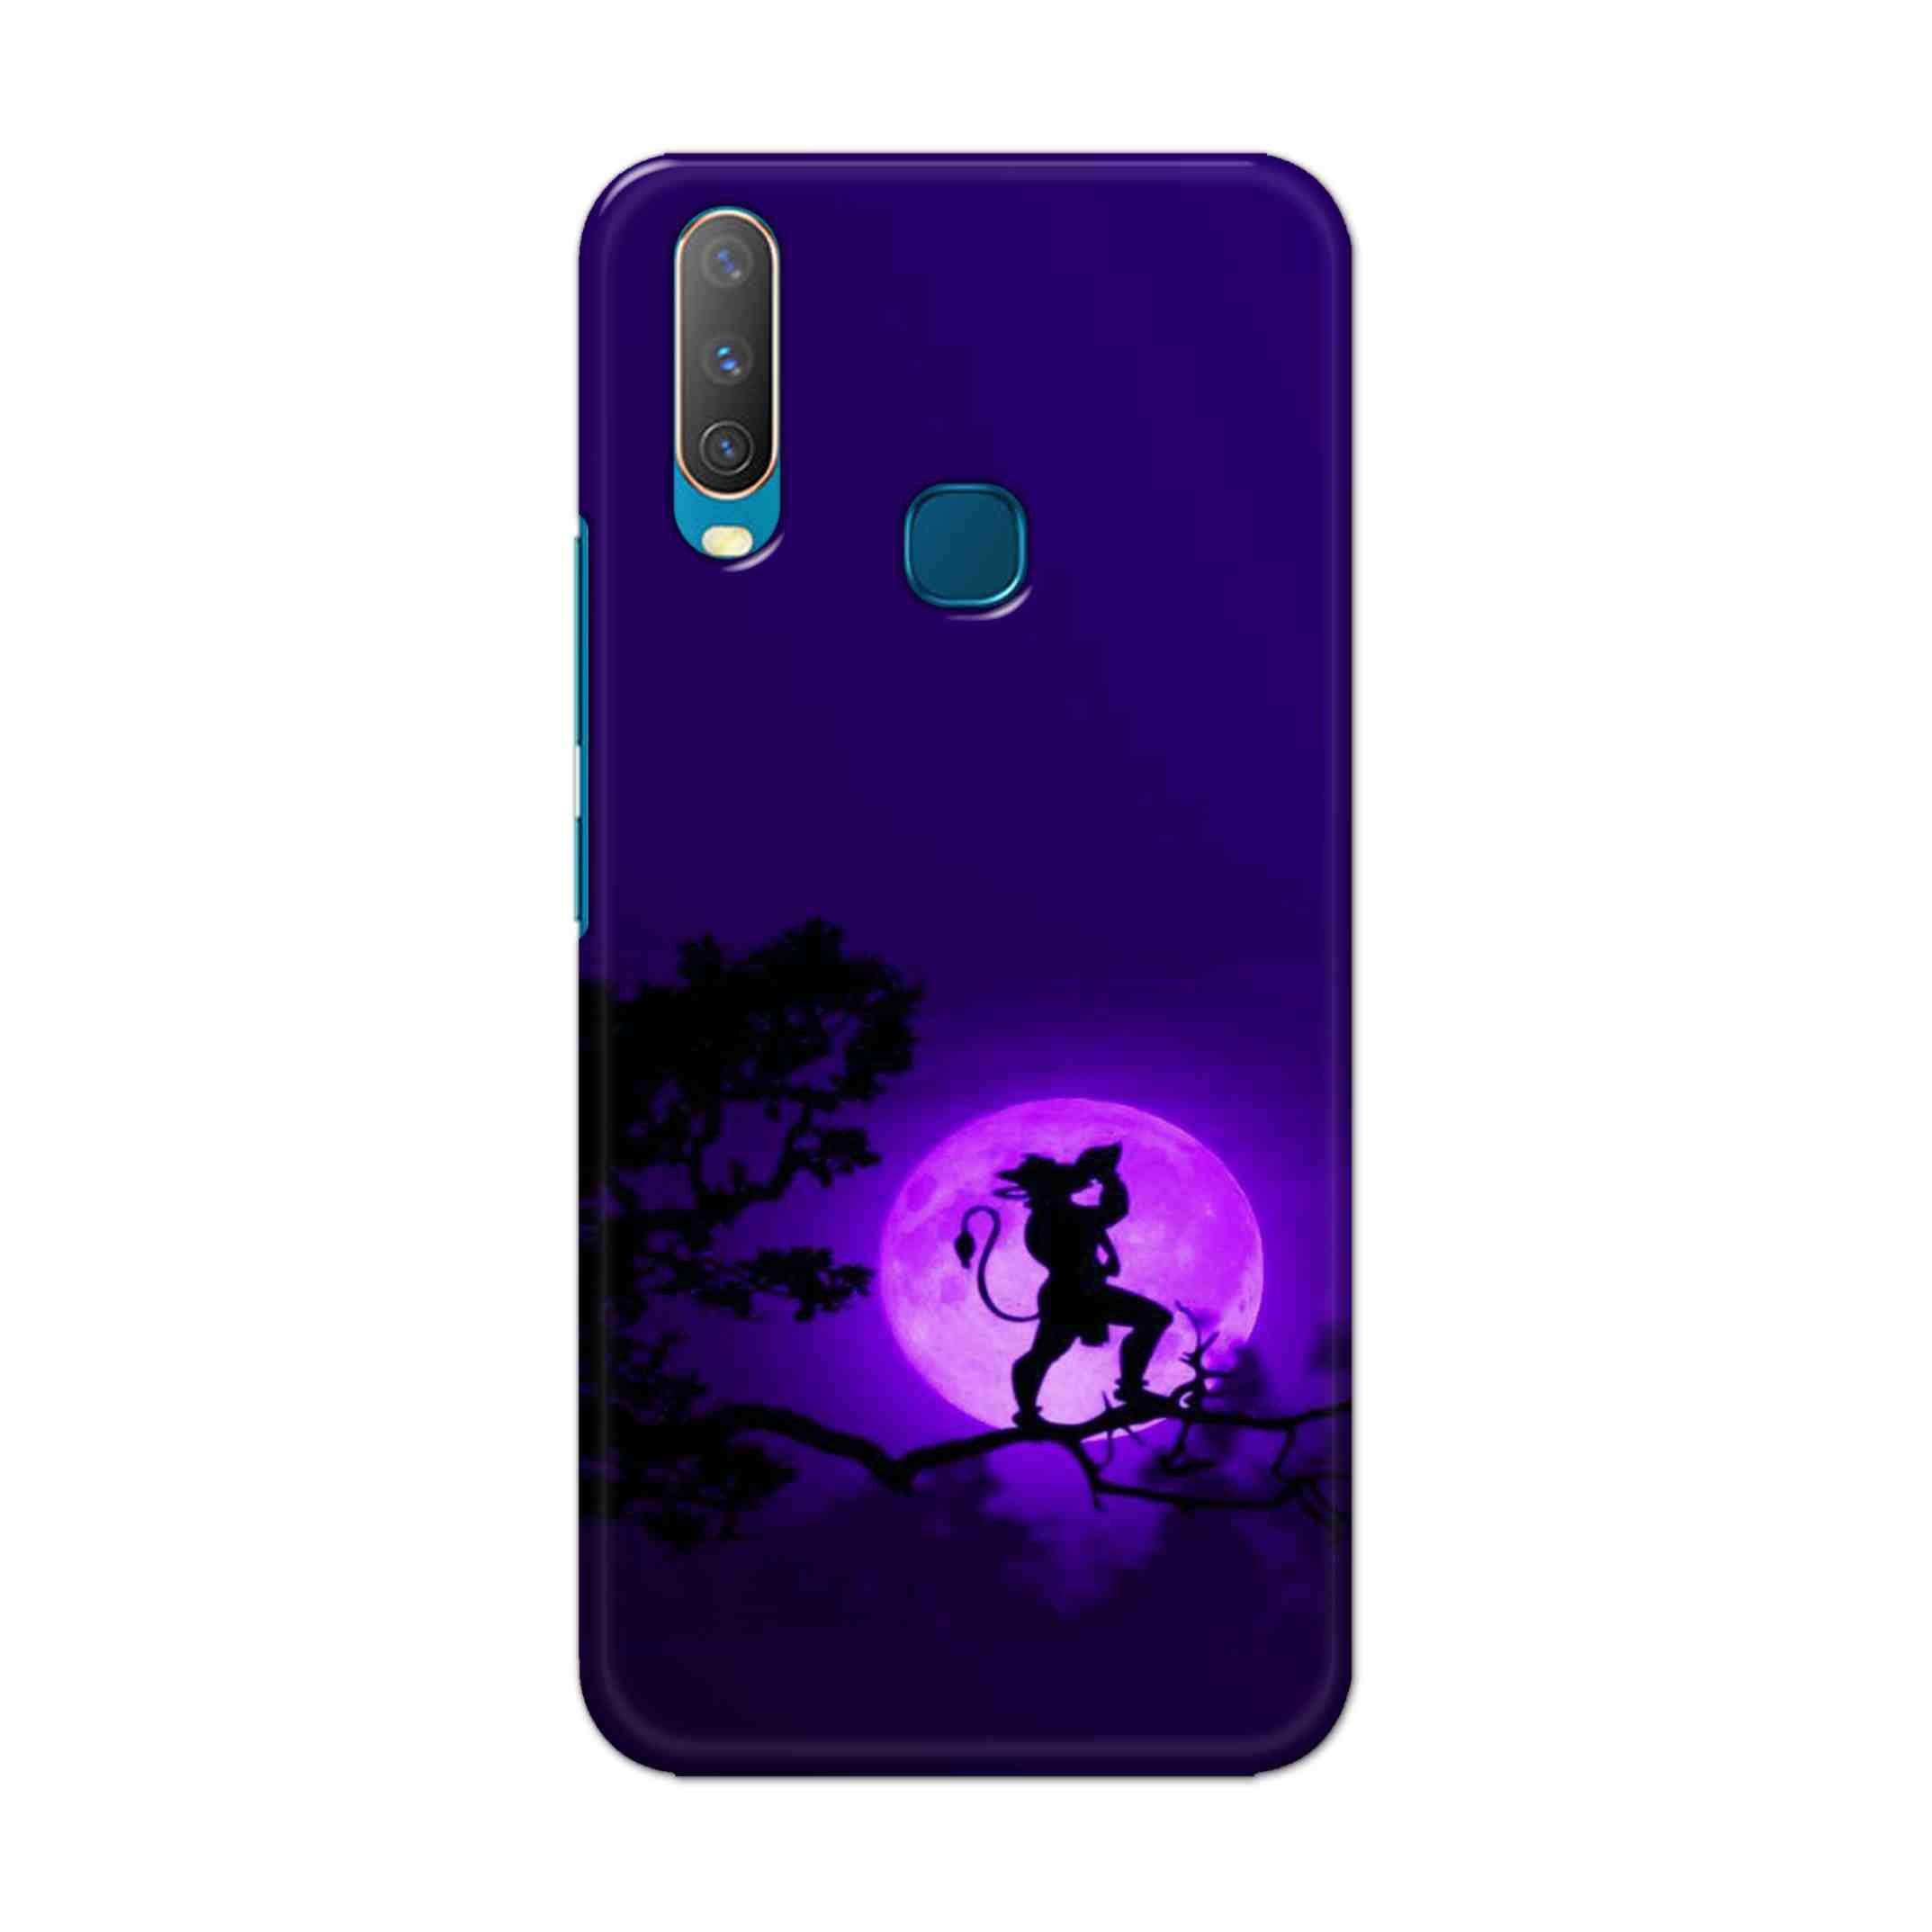 Buy Hanuman Hard Back Mobile Phone Case Cover For Vivo Y17 / U10 Online